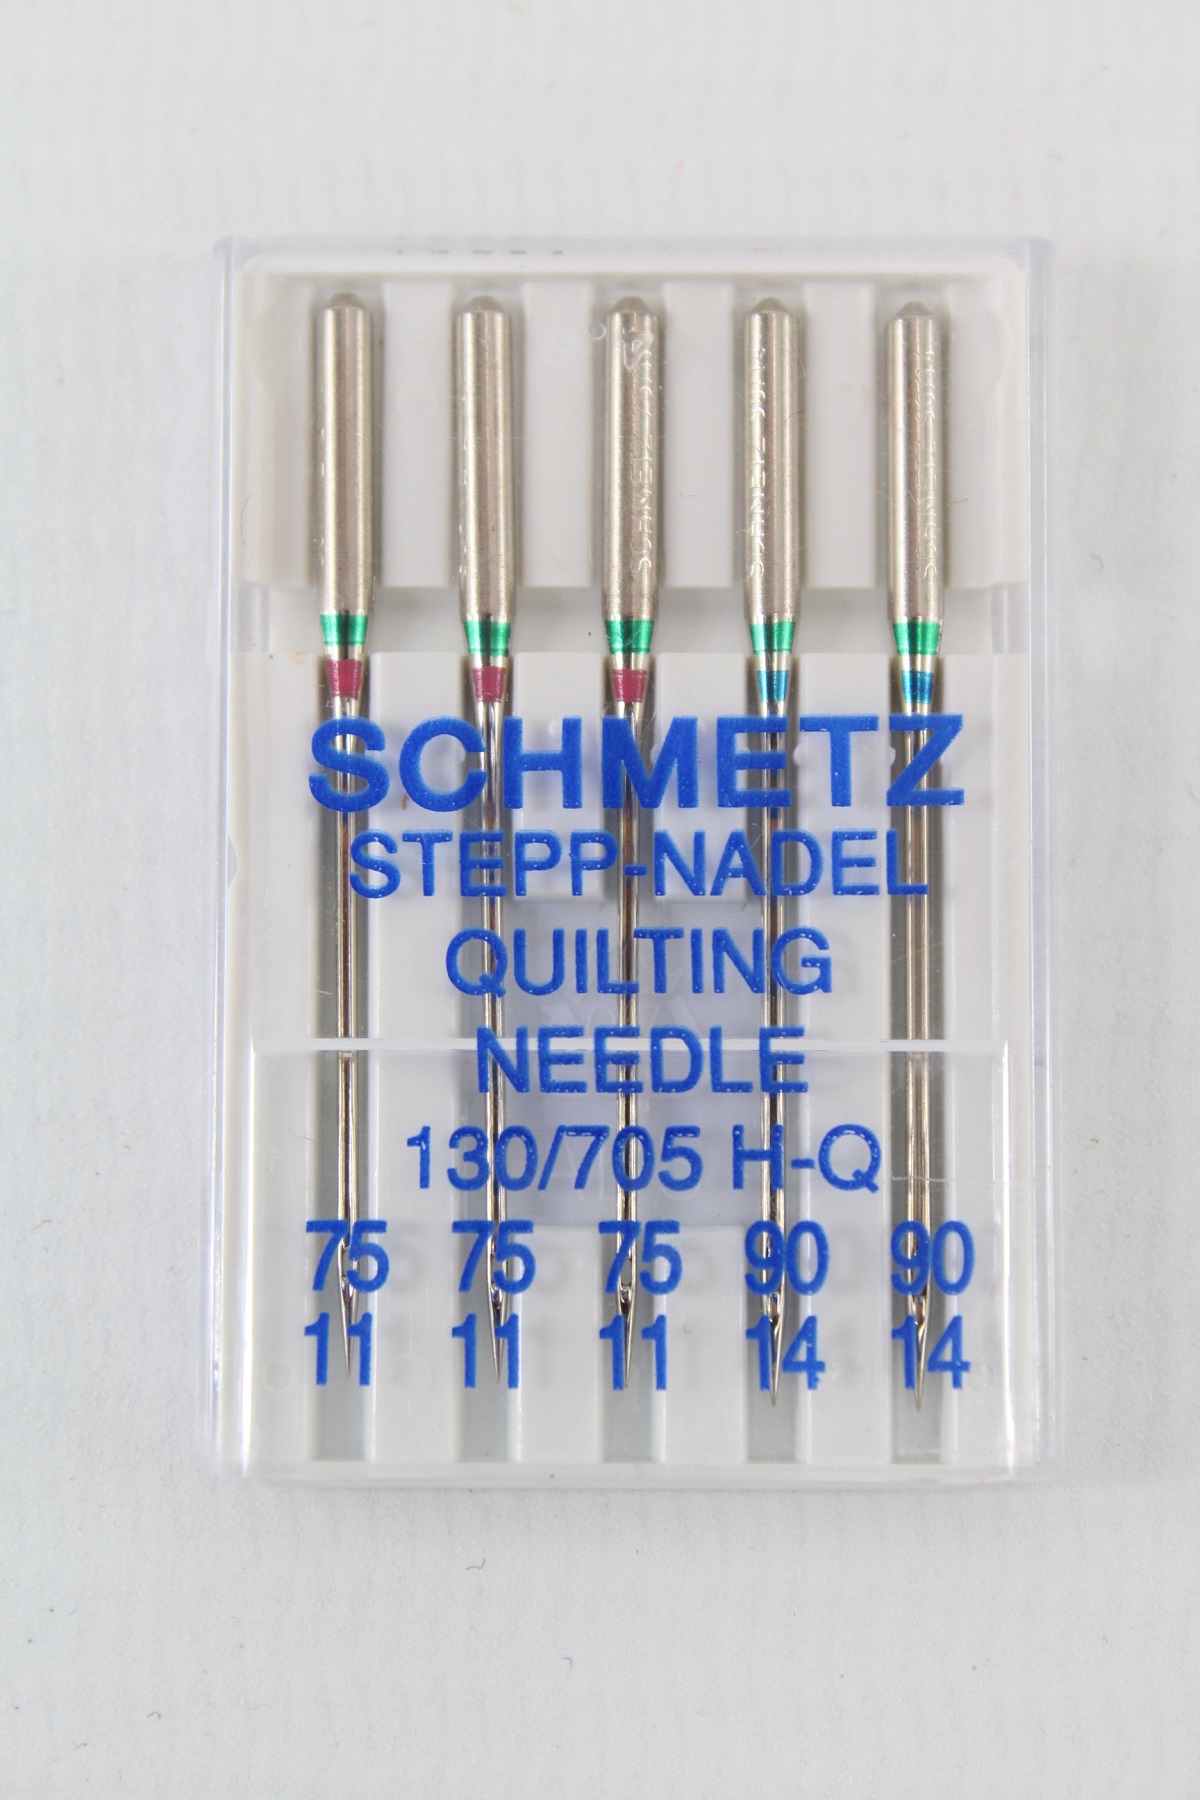 Schmetz Stepp-Nadel Quilting 130/705 H-Q 75/11 und 90/14